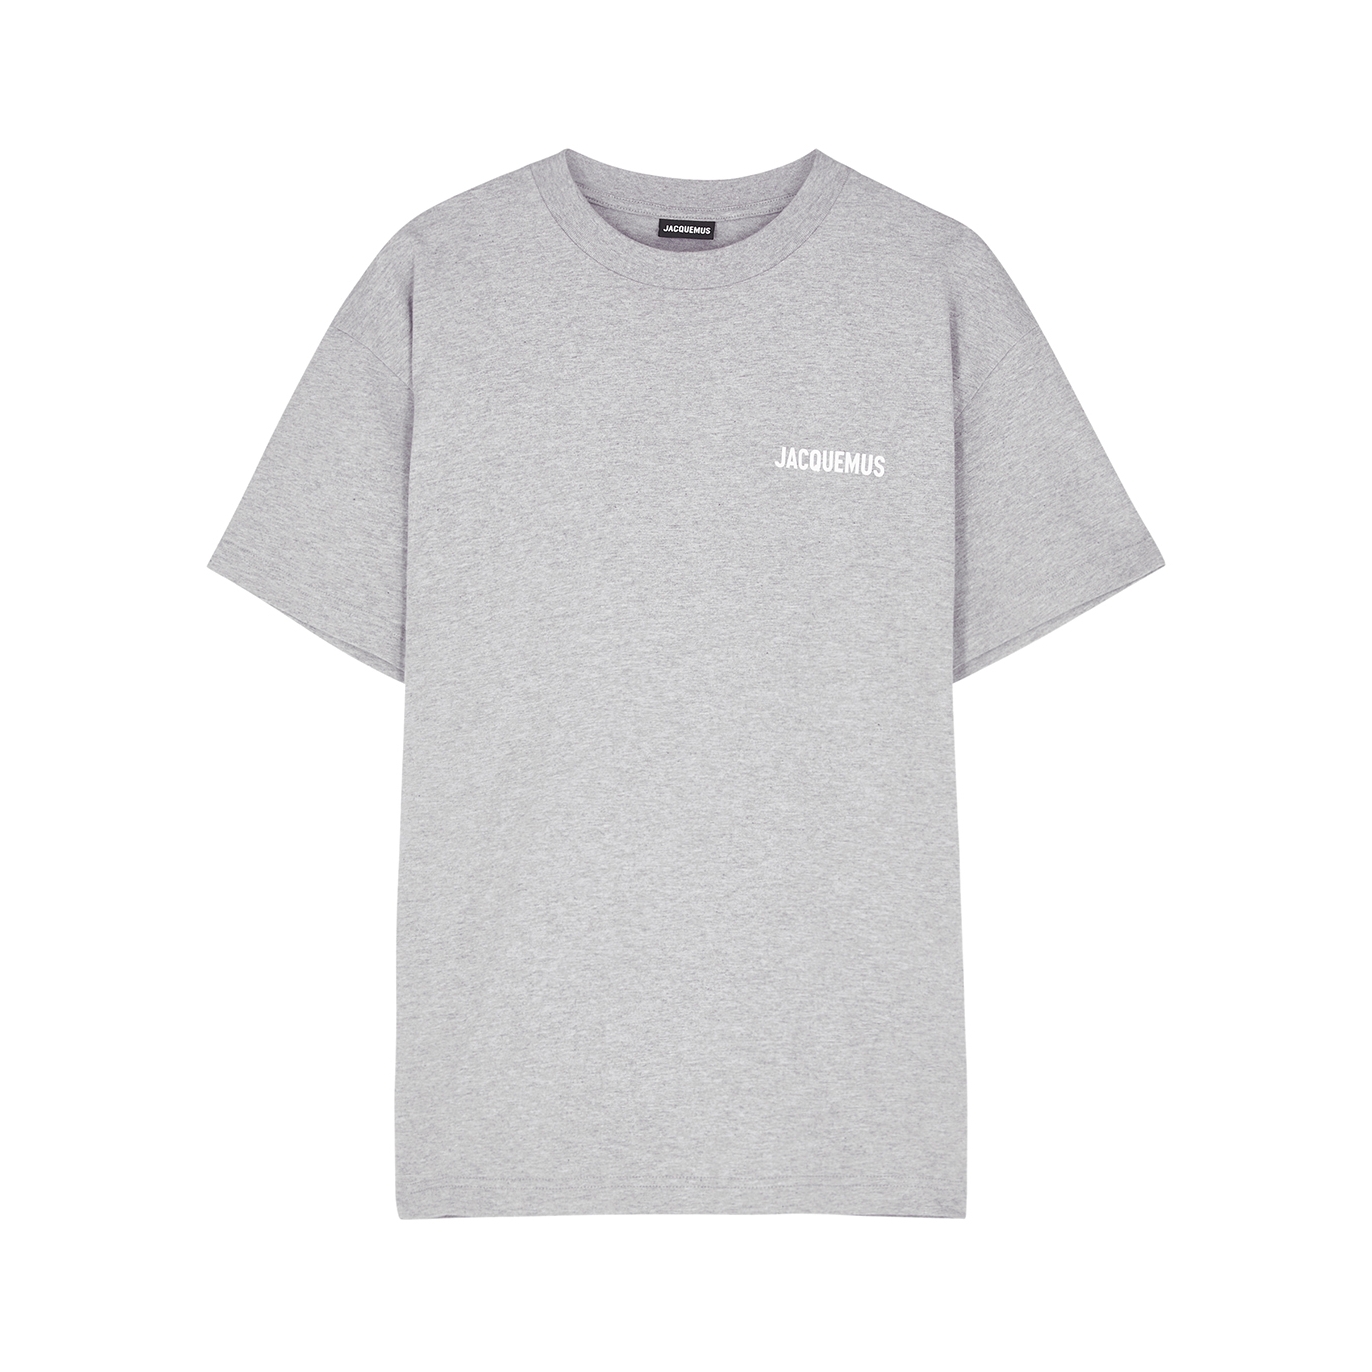 Jacquemus Le T-shirt Cotton T-shirt - Grey - XL